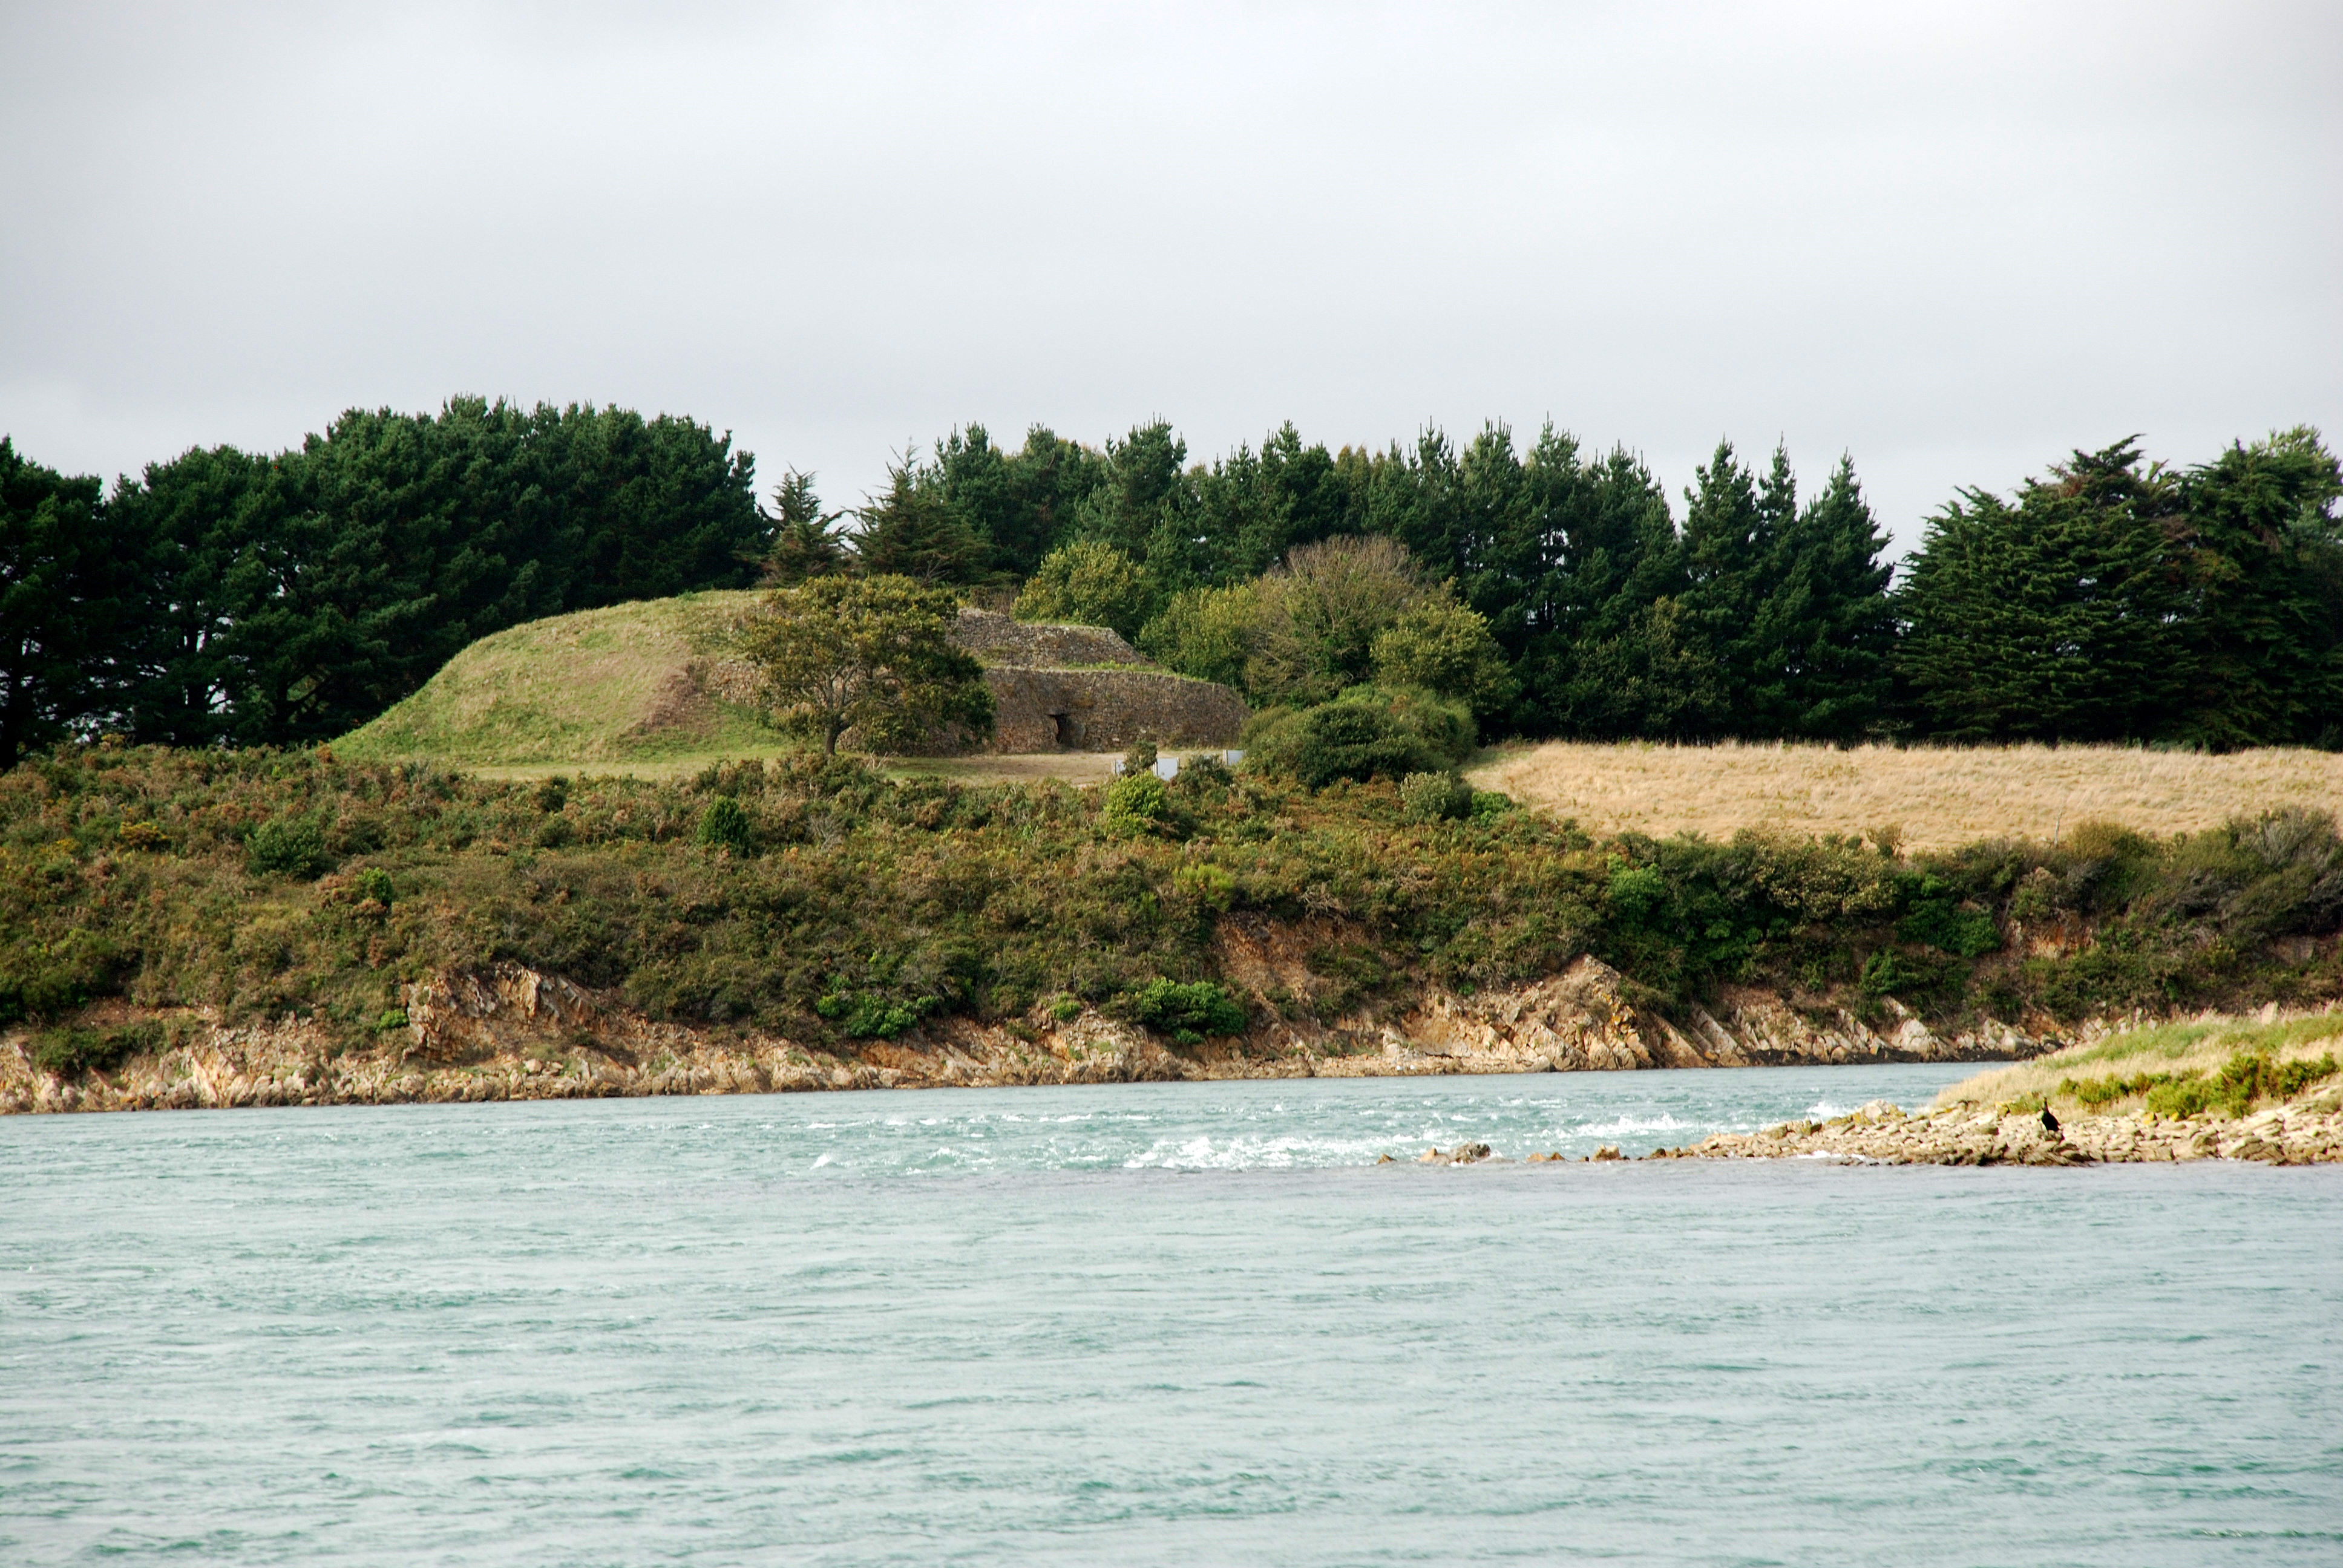 Le Golfe du Morbihan possède de nombreux sites mégalithiques comme ici le Cairn de Gavrinis.